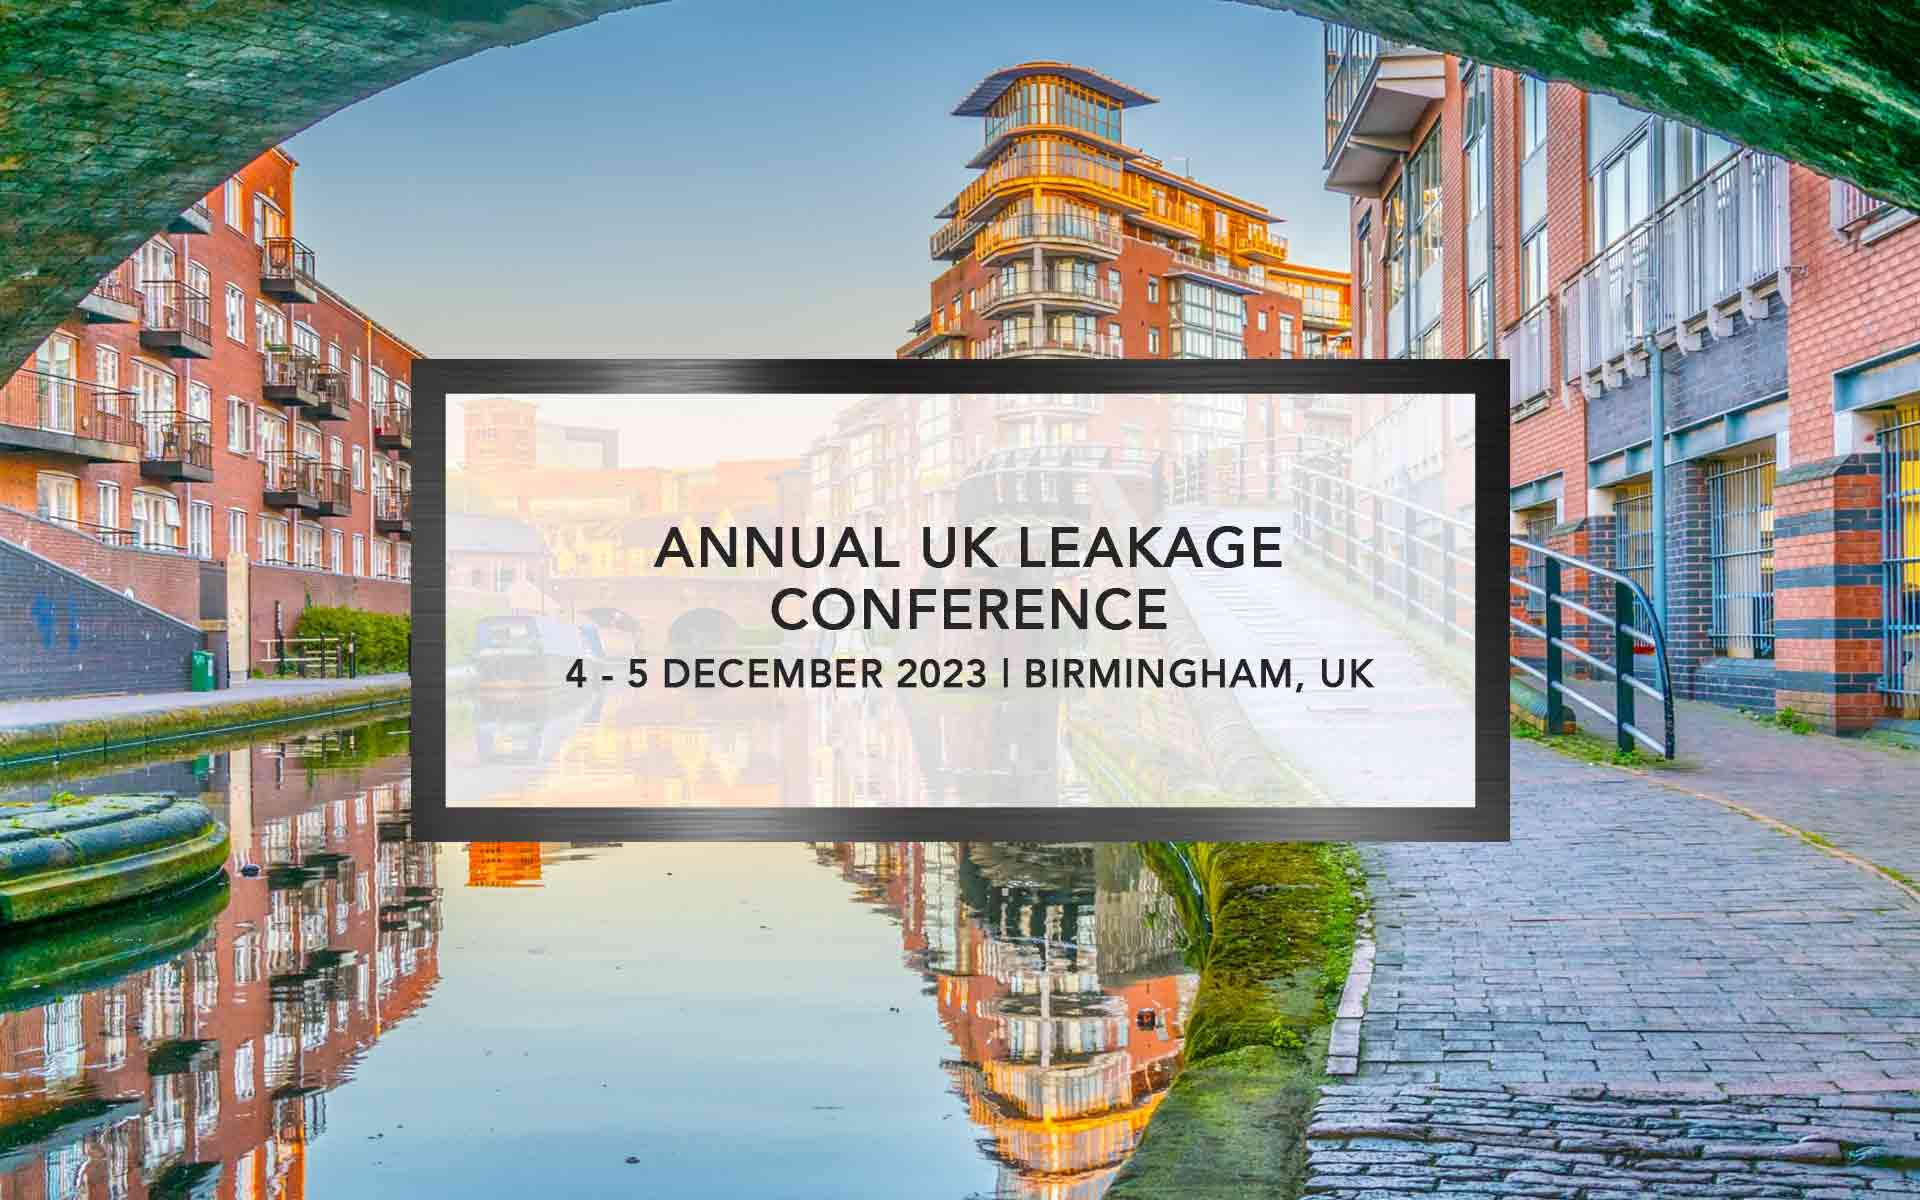 Annual UK Leakage Conference | Optimatics